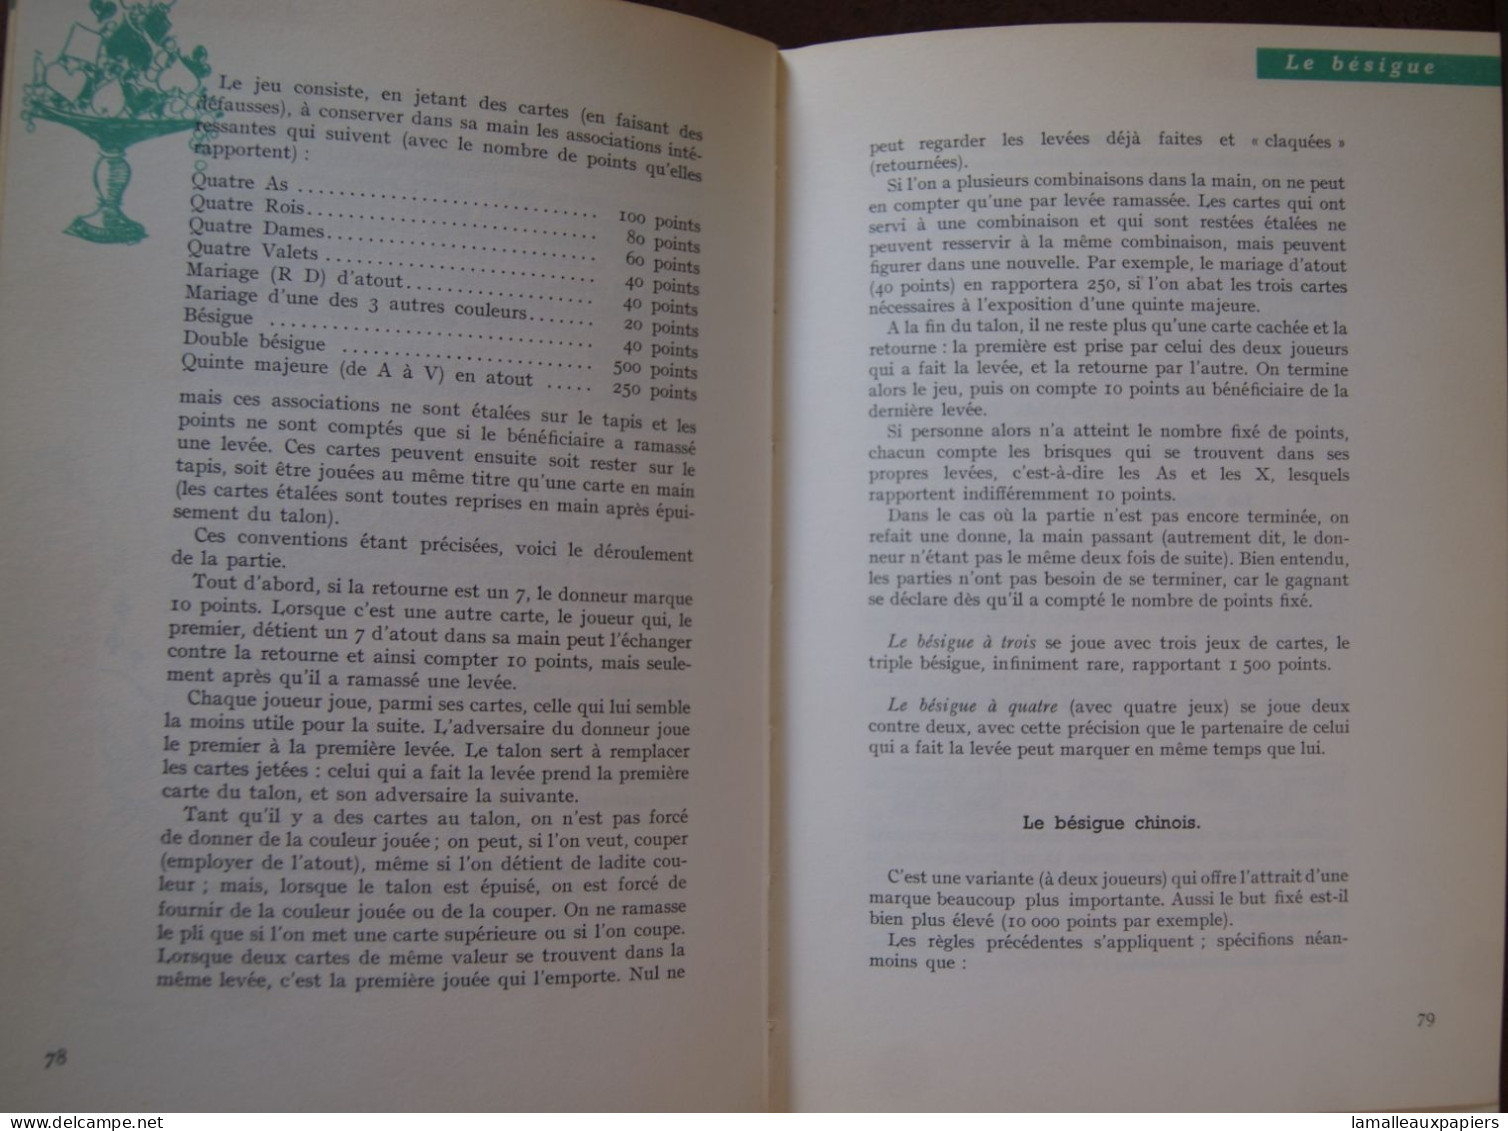 Le Code Des Jeux (Claude AVELINE) (1961) - Palour Games